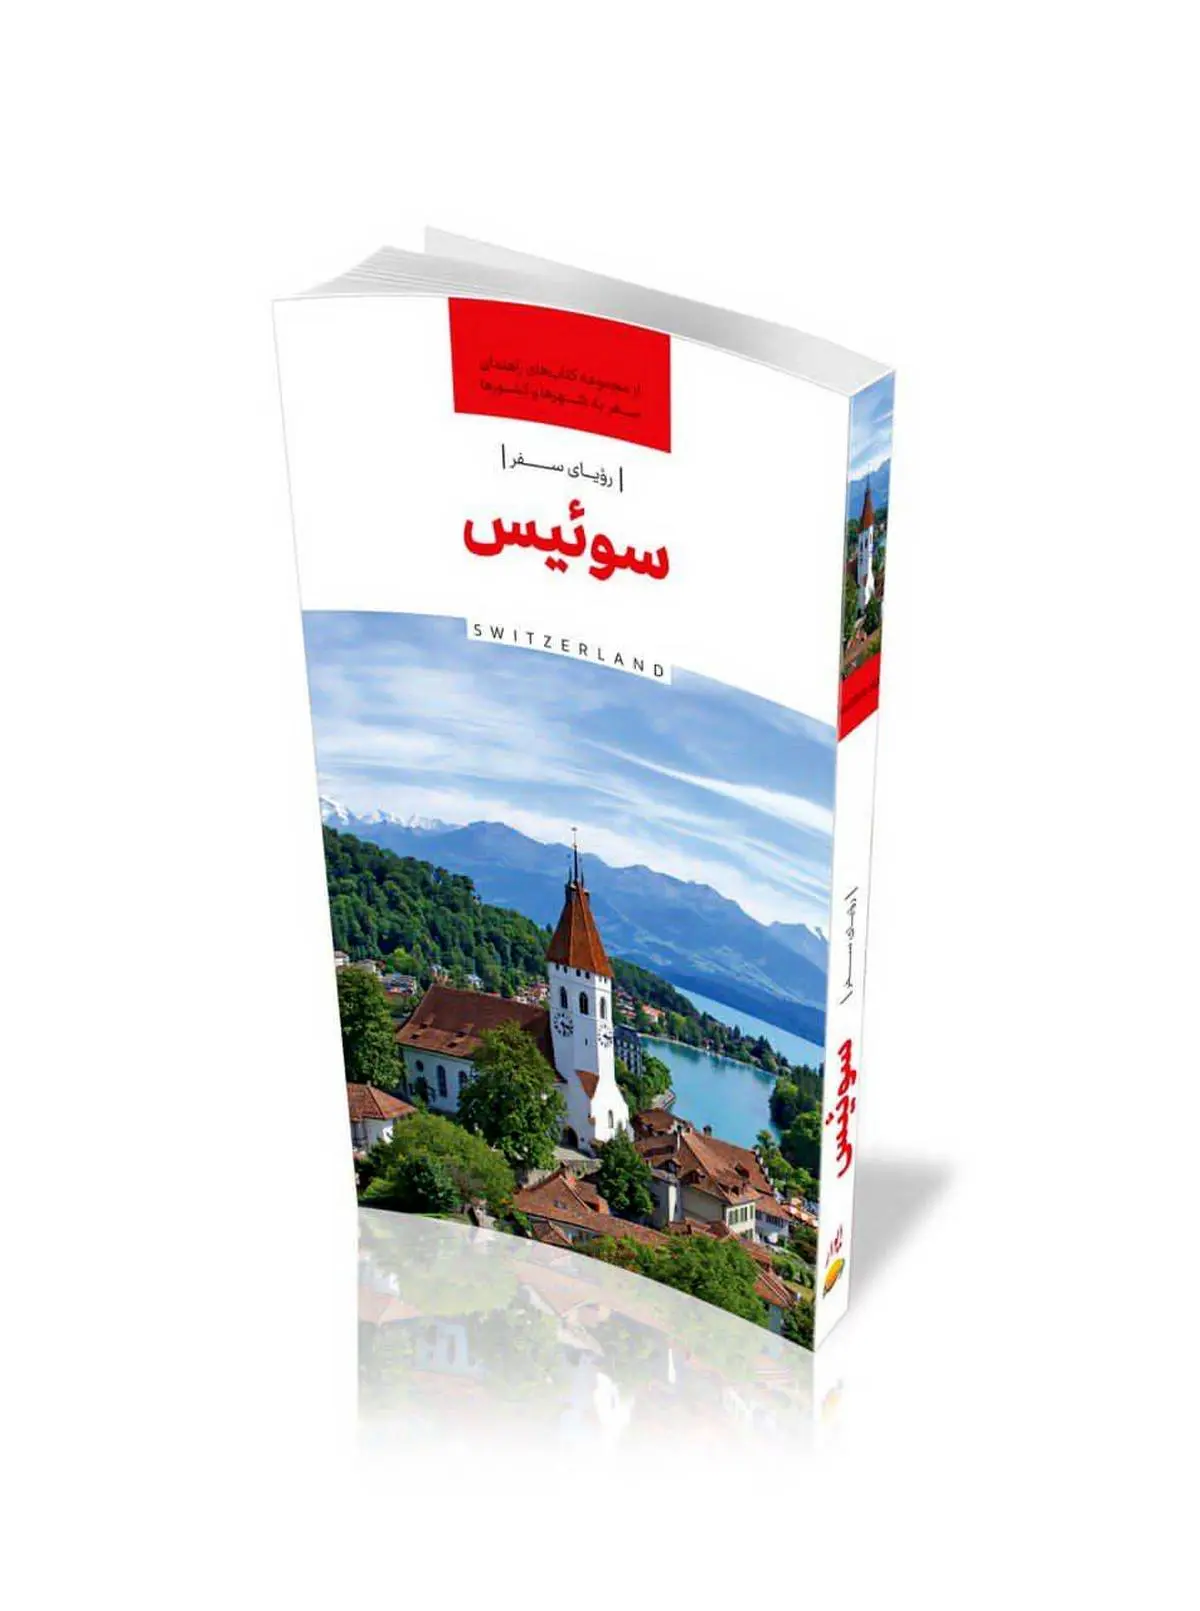 با این کتاب به سوئیس سفر کنید 

